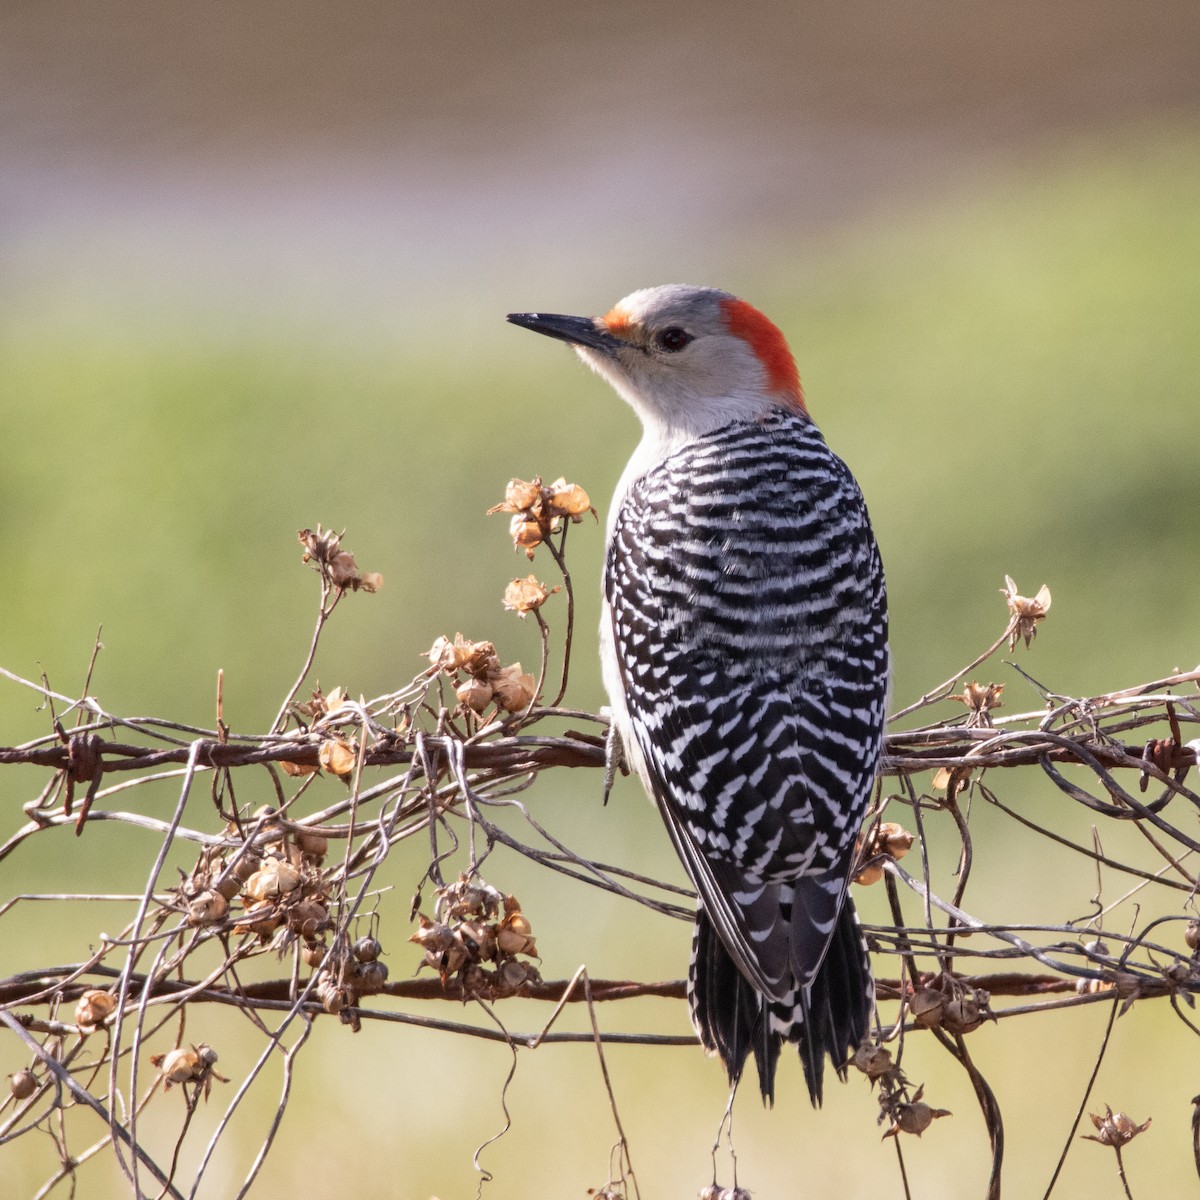 Red-bellied Woodpecker - Martine Stolk